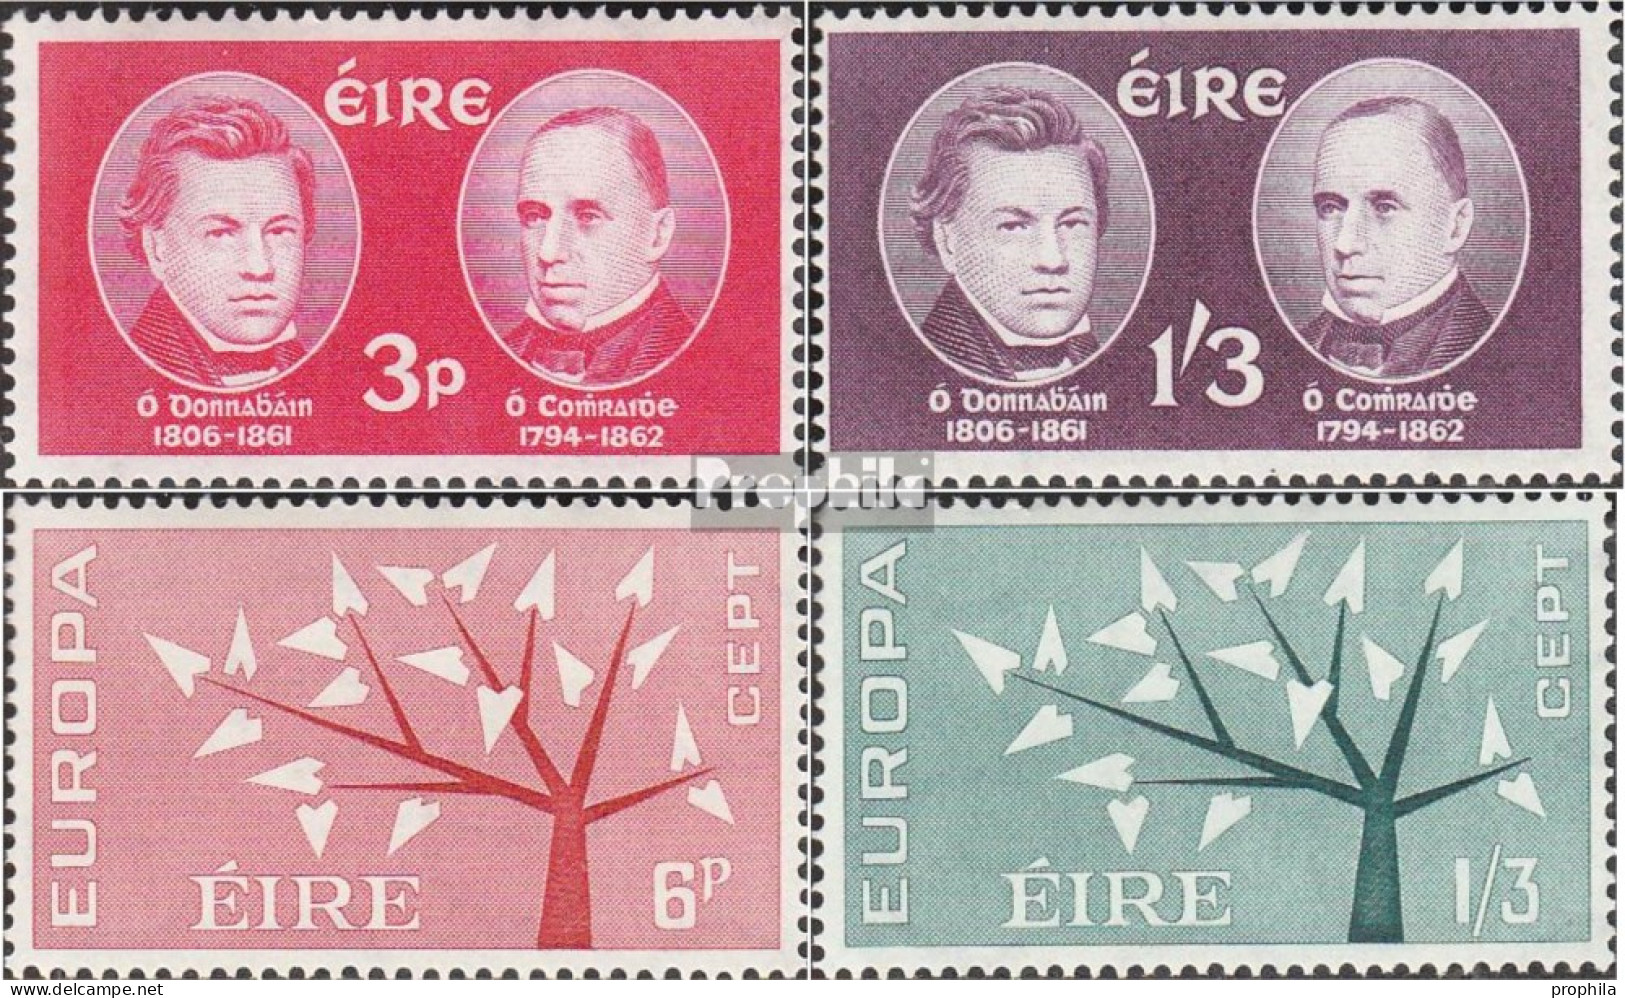 Irland Postfrisch Gelehrte 1962 Todestage, Europa - Unused Stamps